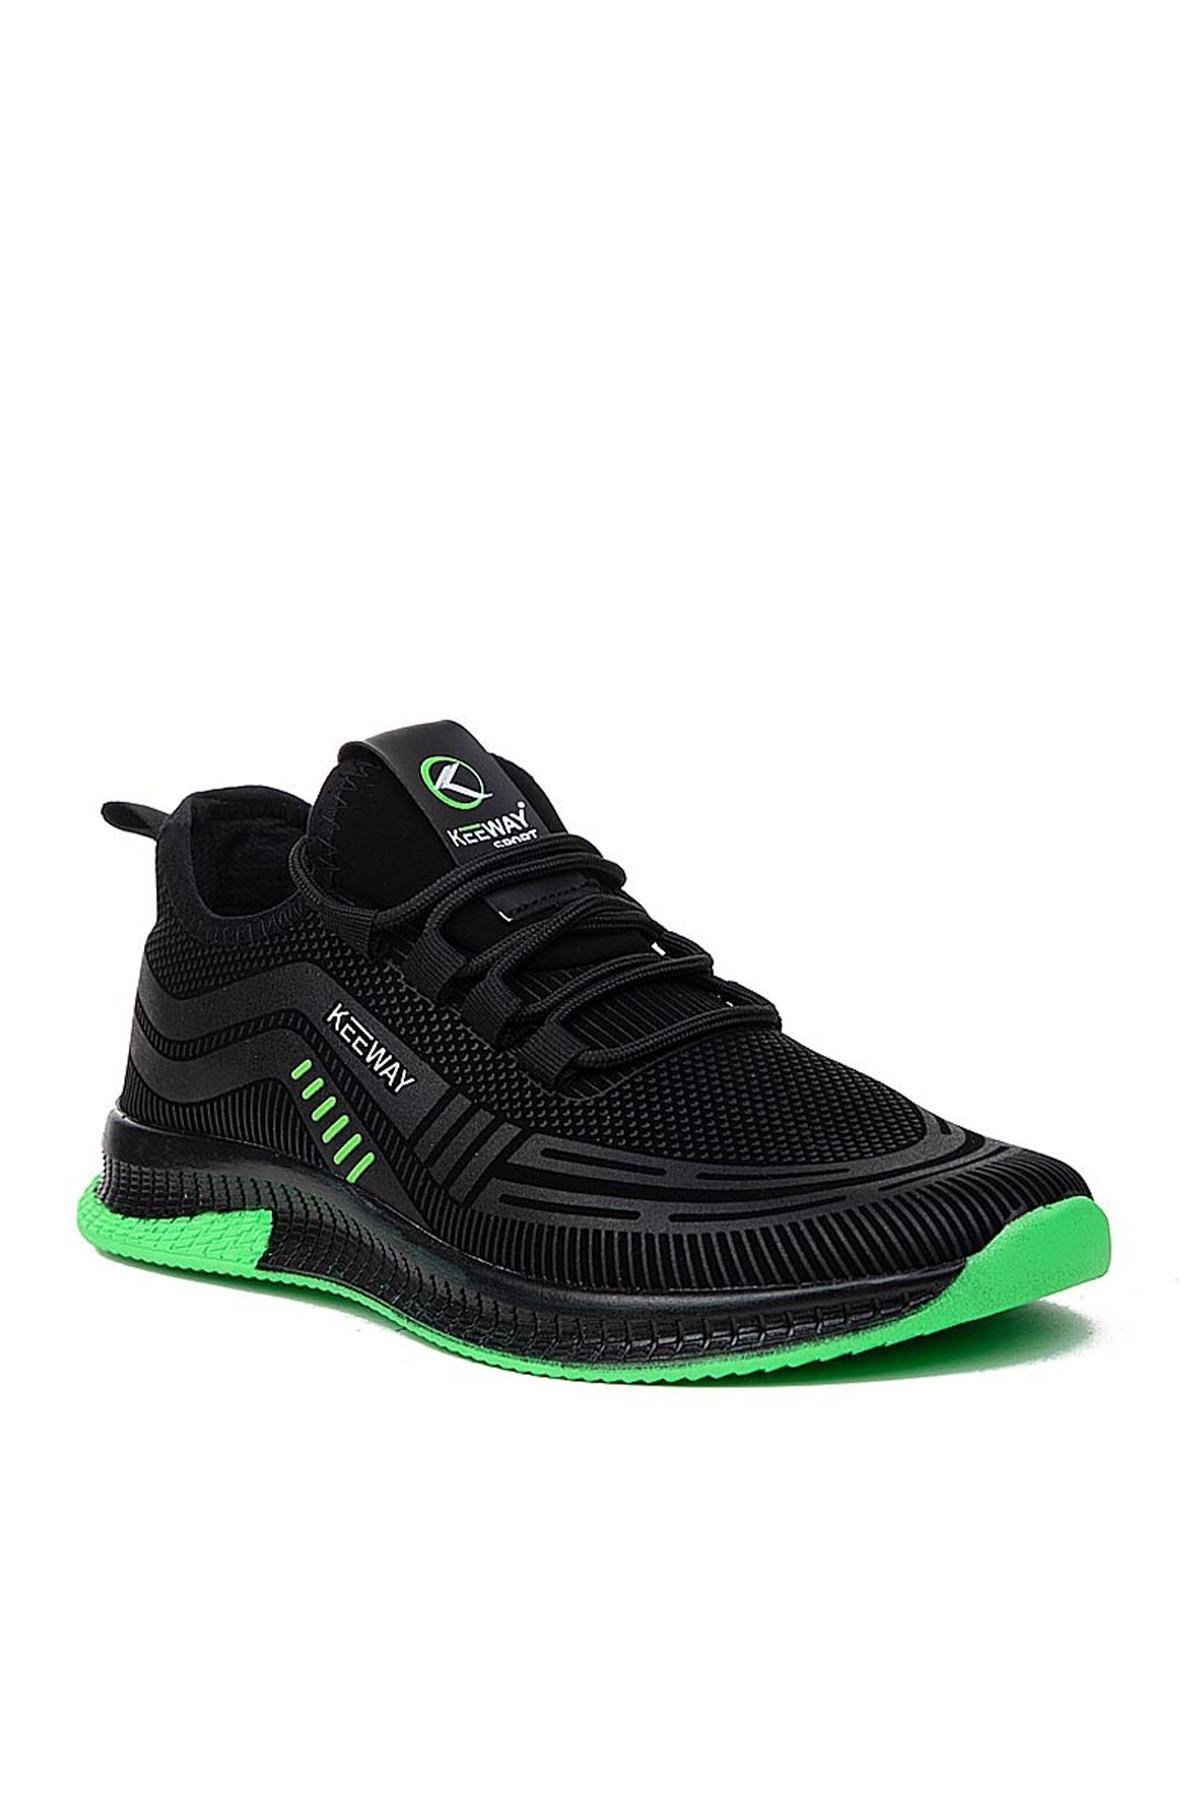 Keeway 5023 Dalgıç Erkek Spor Ayakkabı Siyah Yeşil